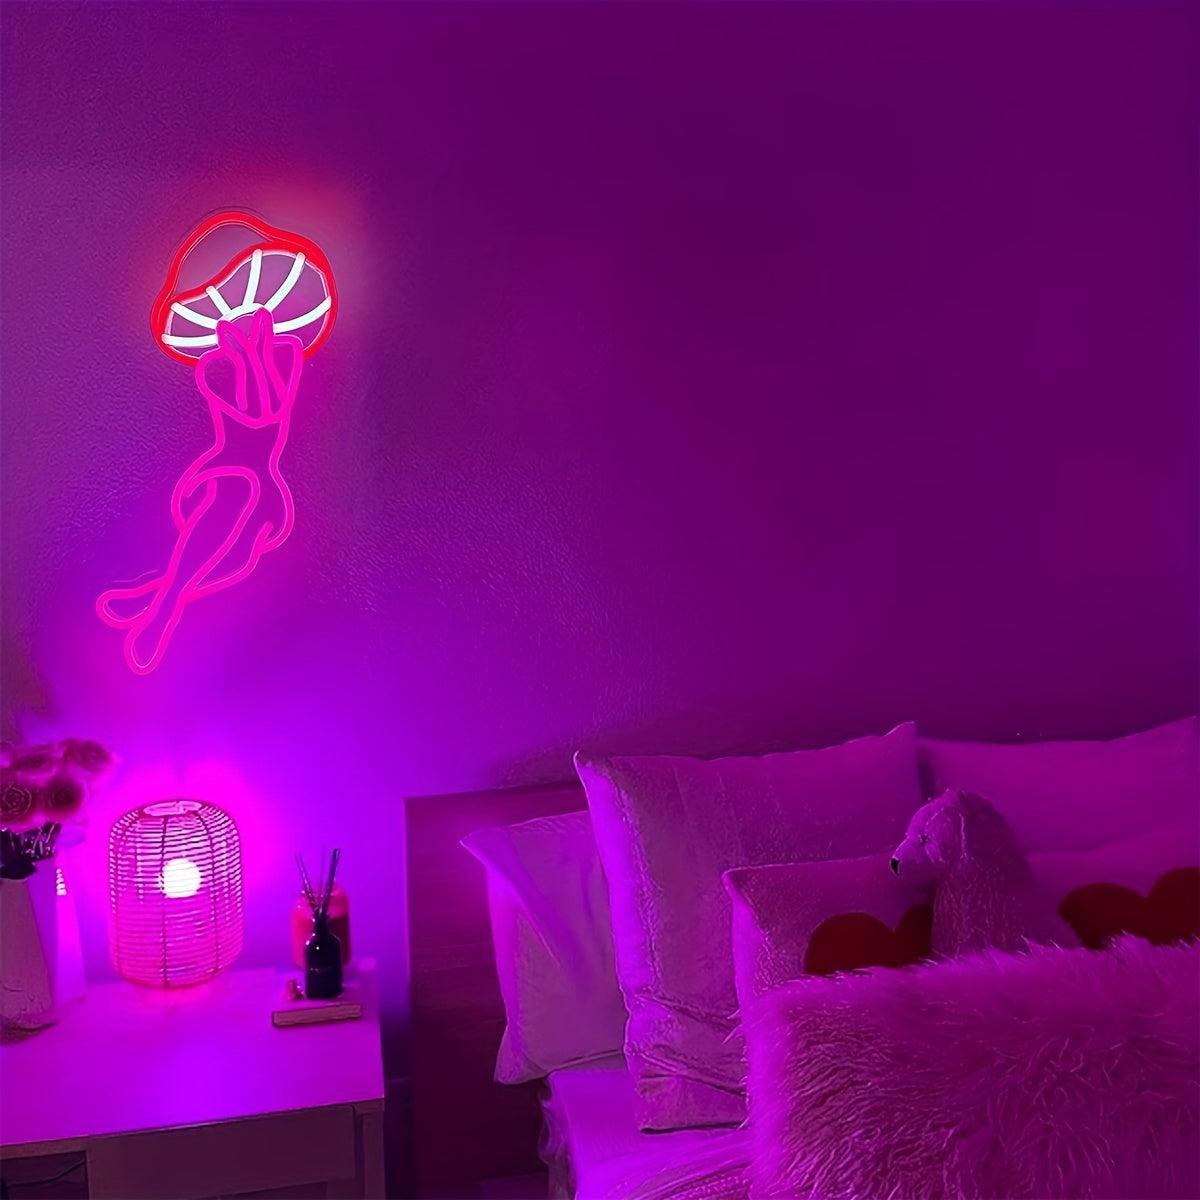 mushroom-neon-sign-usb-powered-led-light